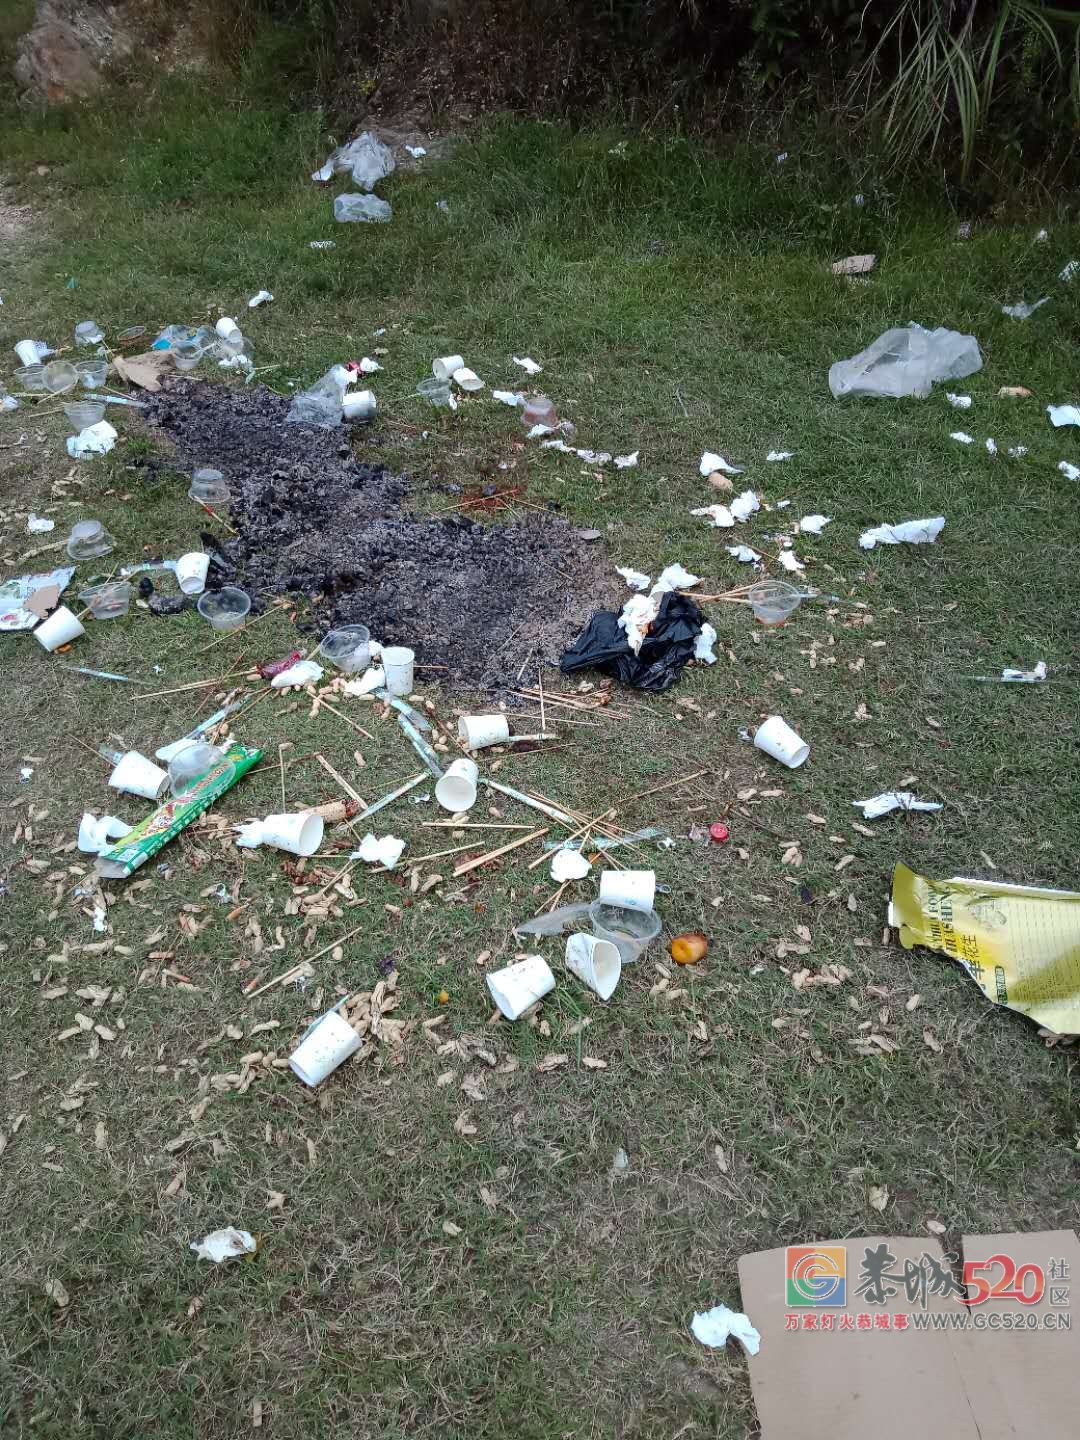 栗木金钱洞水库又被扔了一地的垃圾24 / 作者:恭城是我家 / 帖子ID:266065